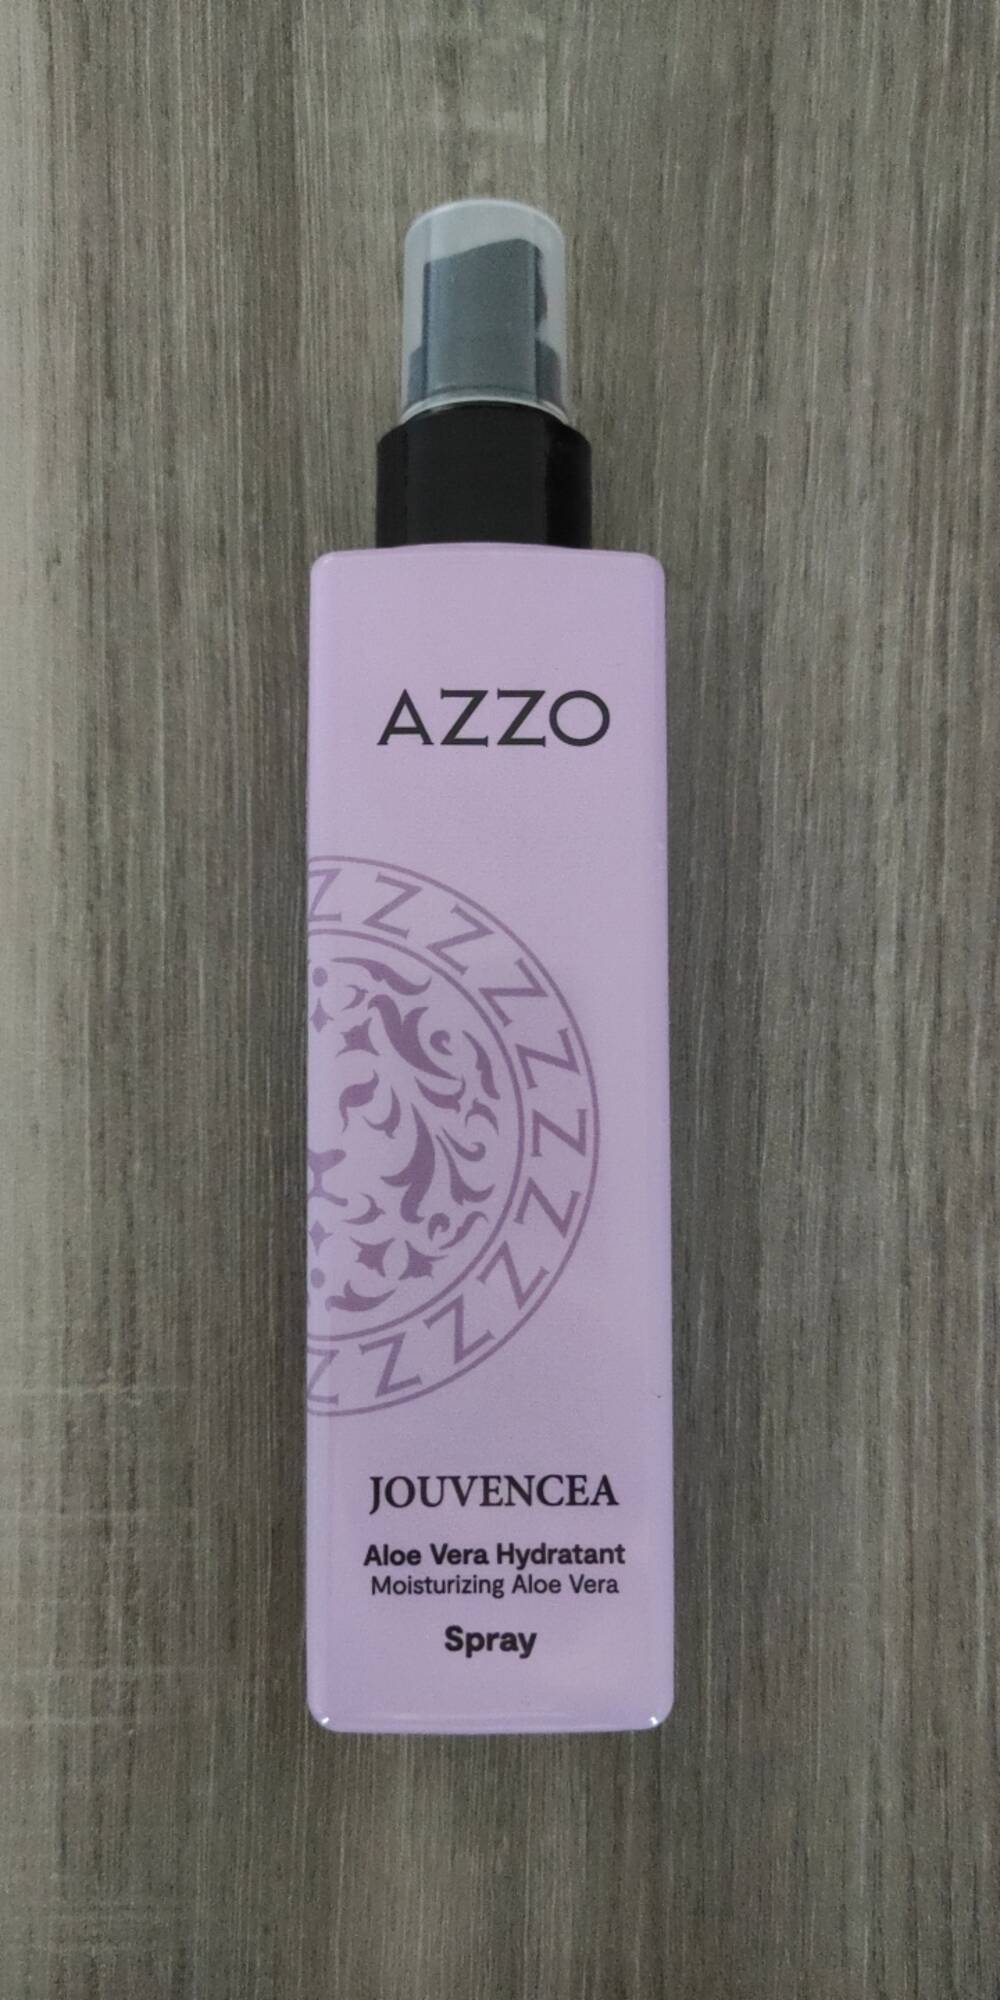 AZZO - Jouvencea - Shampooing aloe vera hydratant